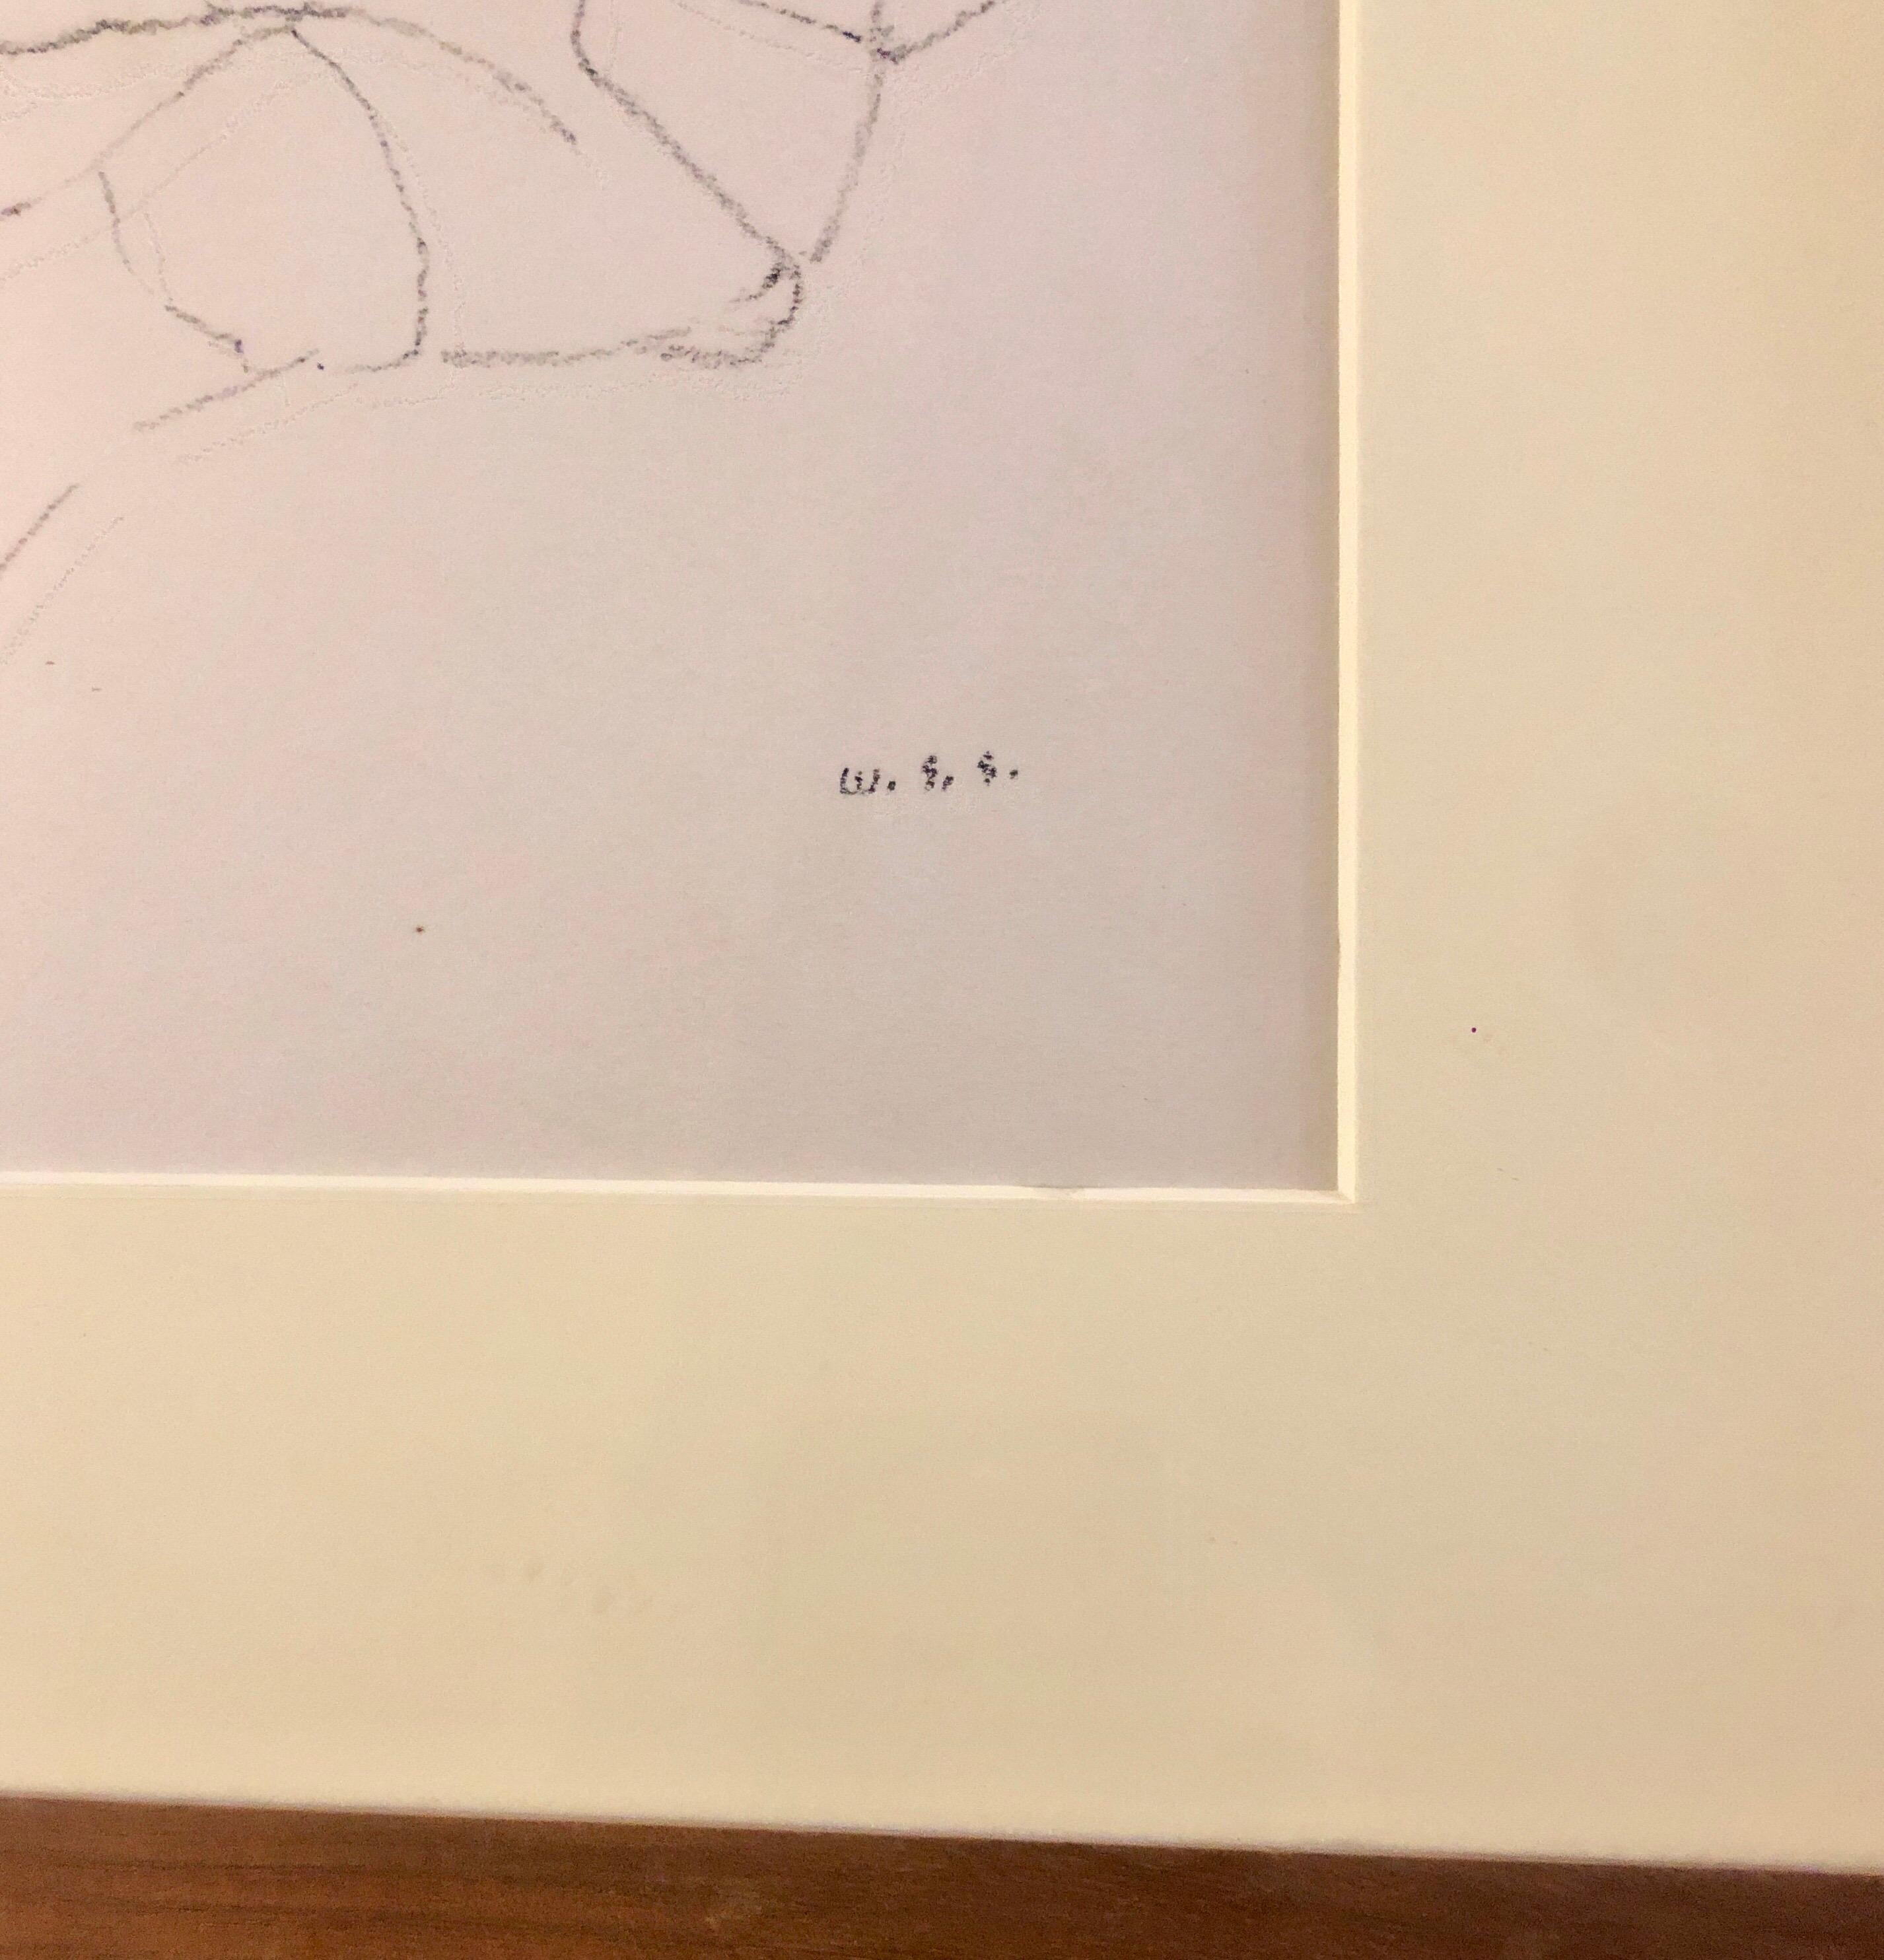 Liegender Akt, frühe modernistische Strichzeichnung des amerikanischen Künstlers William S. Schwartz, um 1940, Gouachezeichnung, signiert mit Initialen, gerahmt. (Größe einschließlich Rahmen). Die Arbeiten erinnern an die Zeichnungen von Joseph